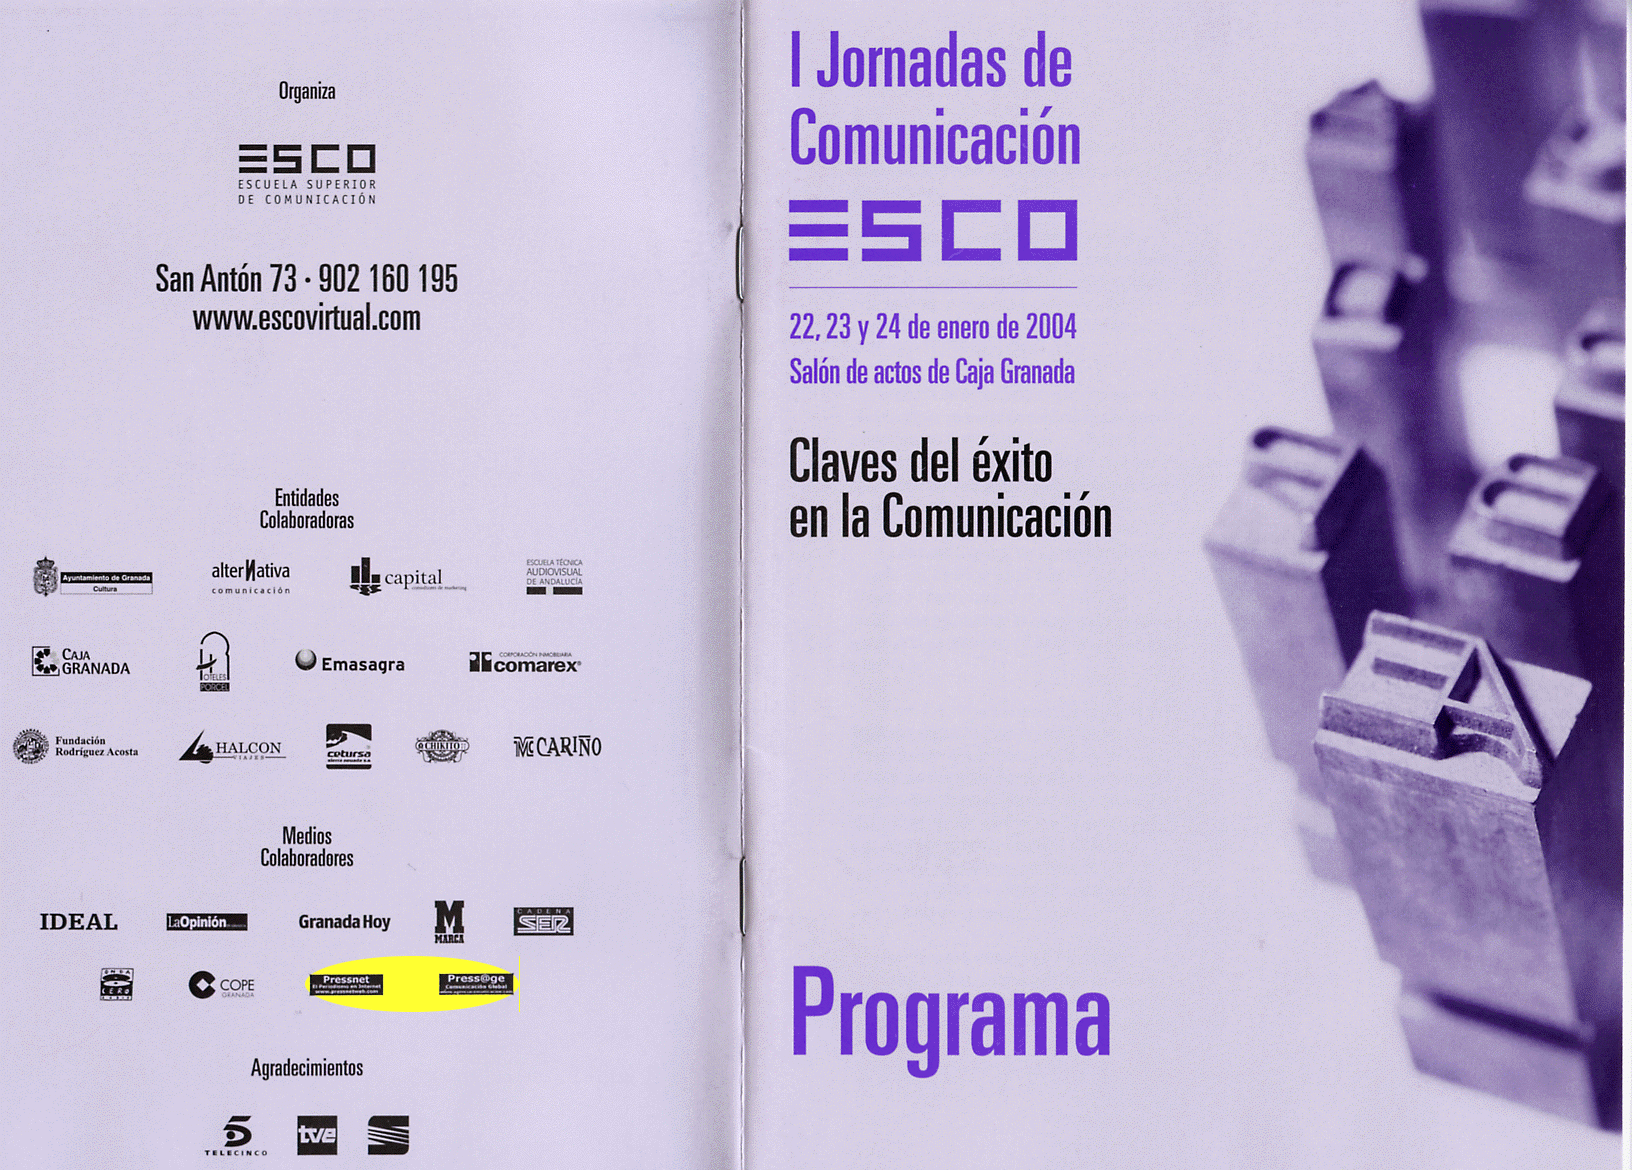 Programa de las I Jornadas de Comunicación ESCO 2004. Pressnet y PressAge Medios de Comunicación Colaboradores